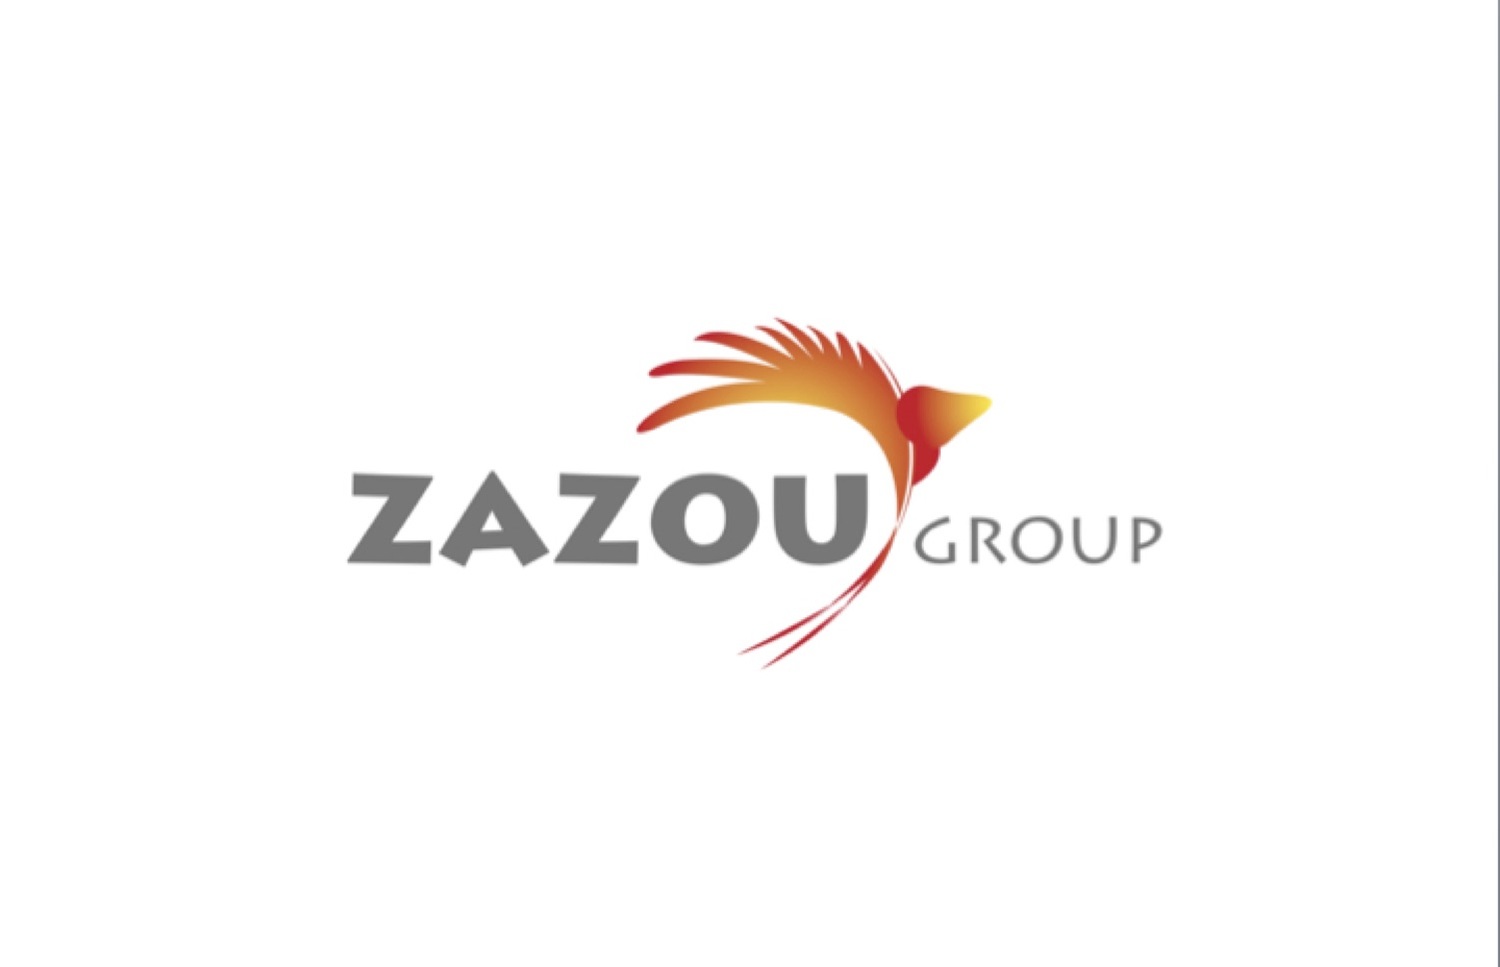 ZAZOU-GROUP